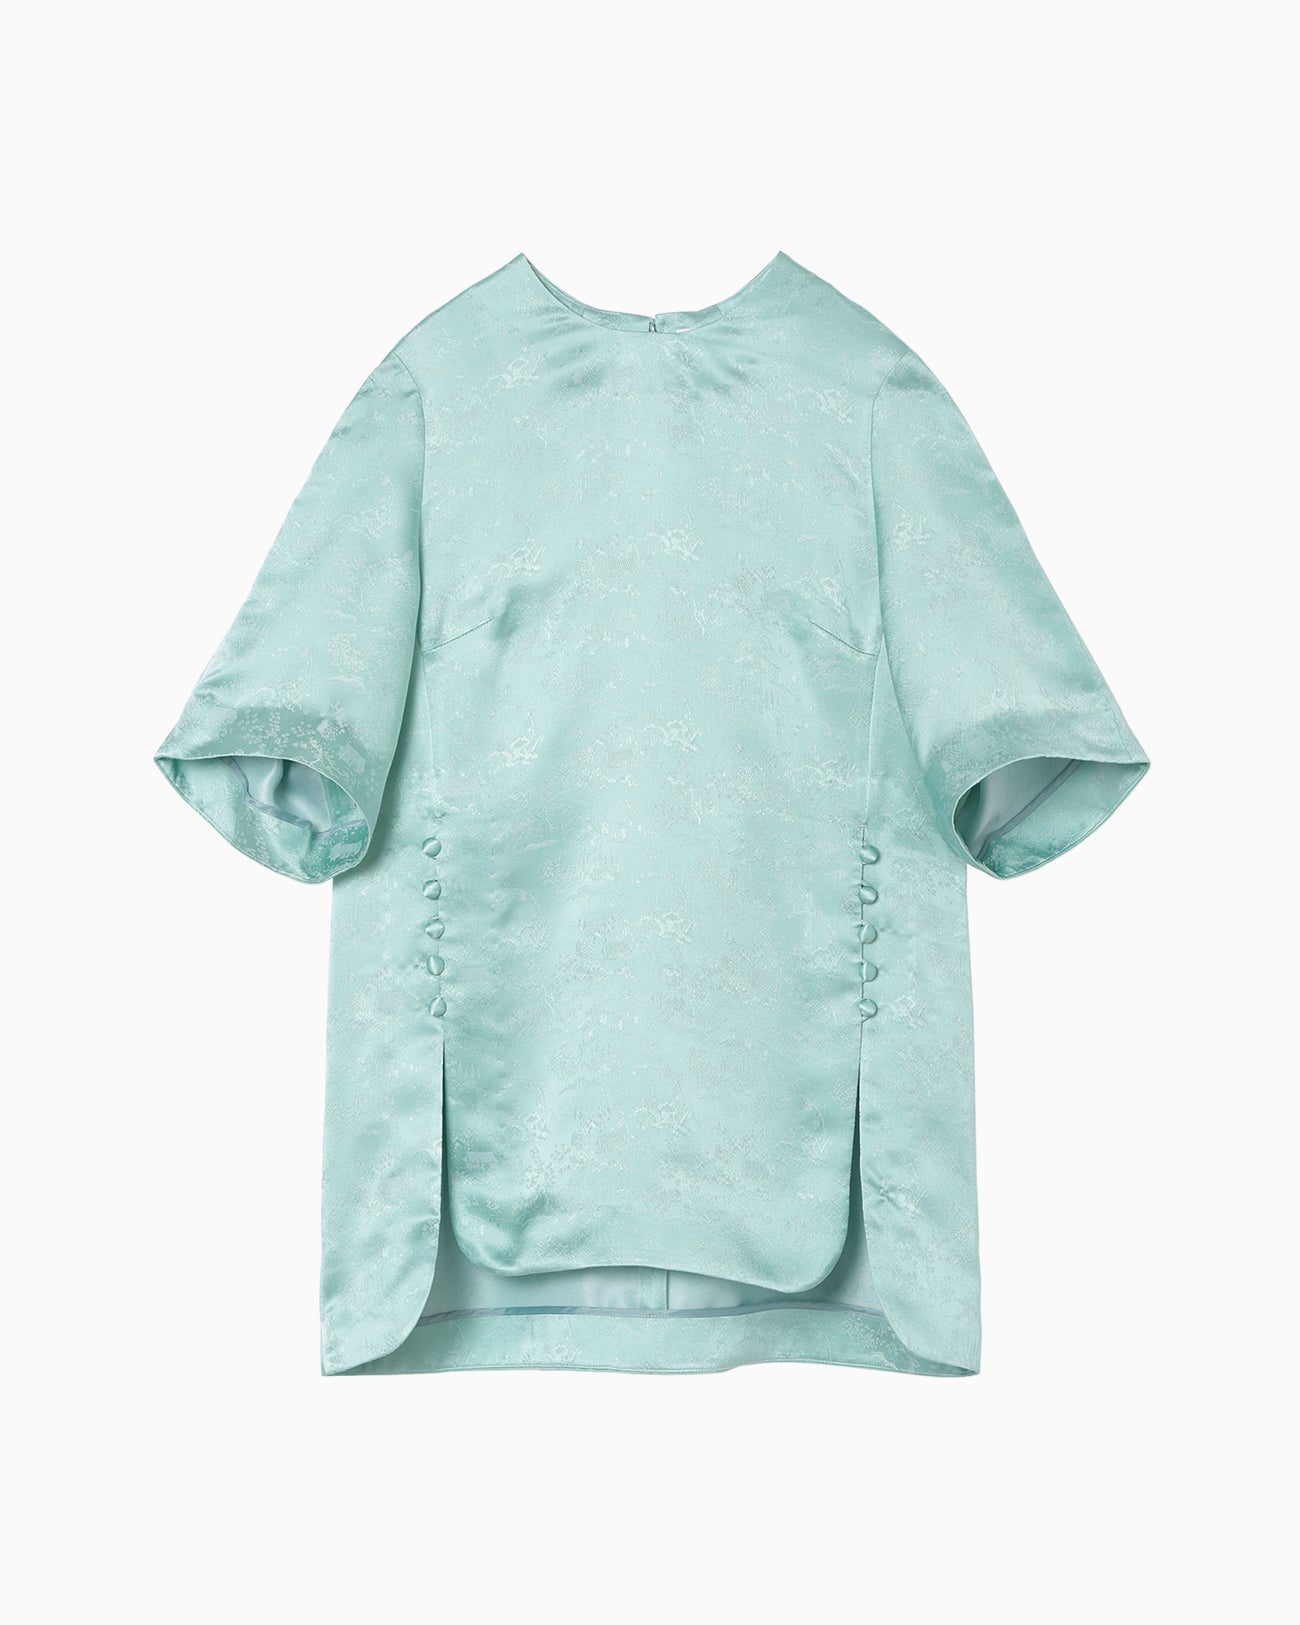 Landscape Silk Jacquard Shirt - mint green